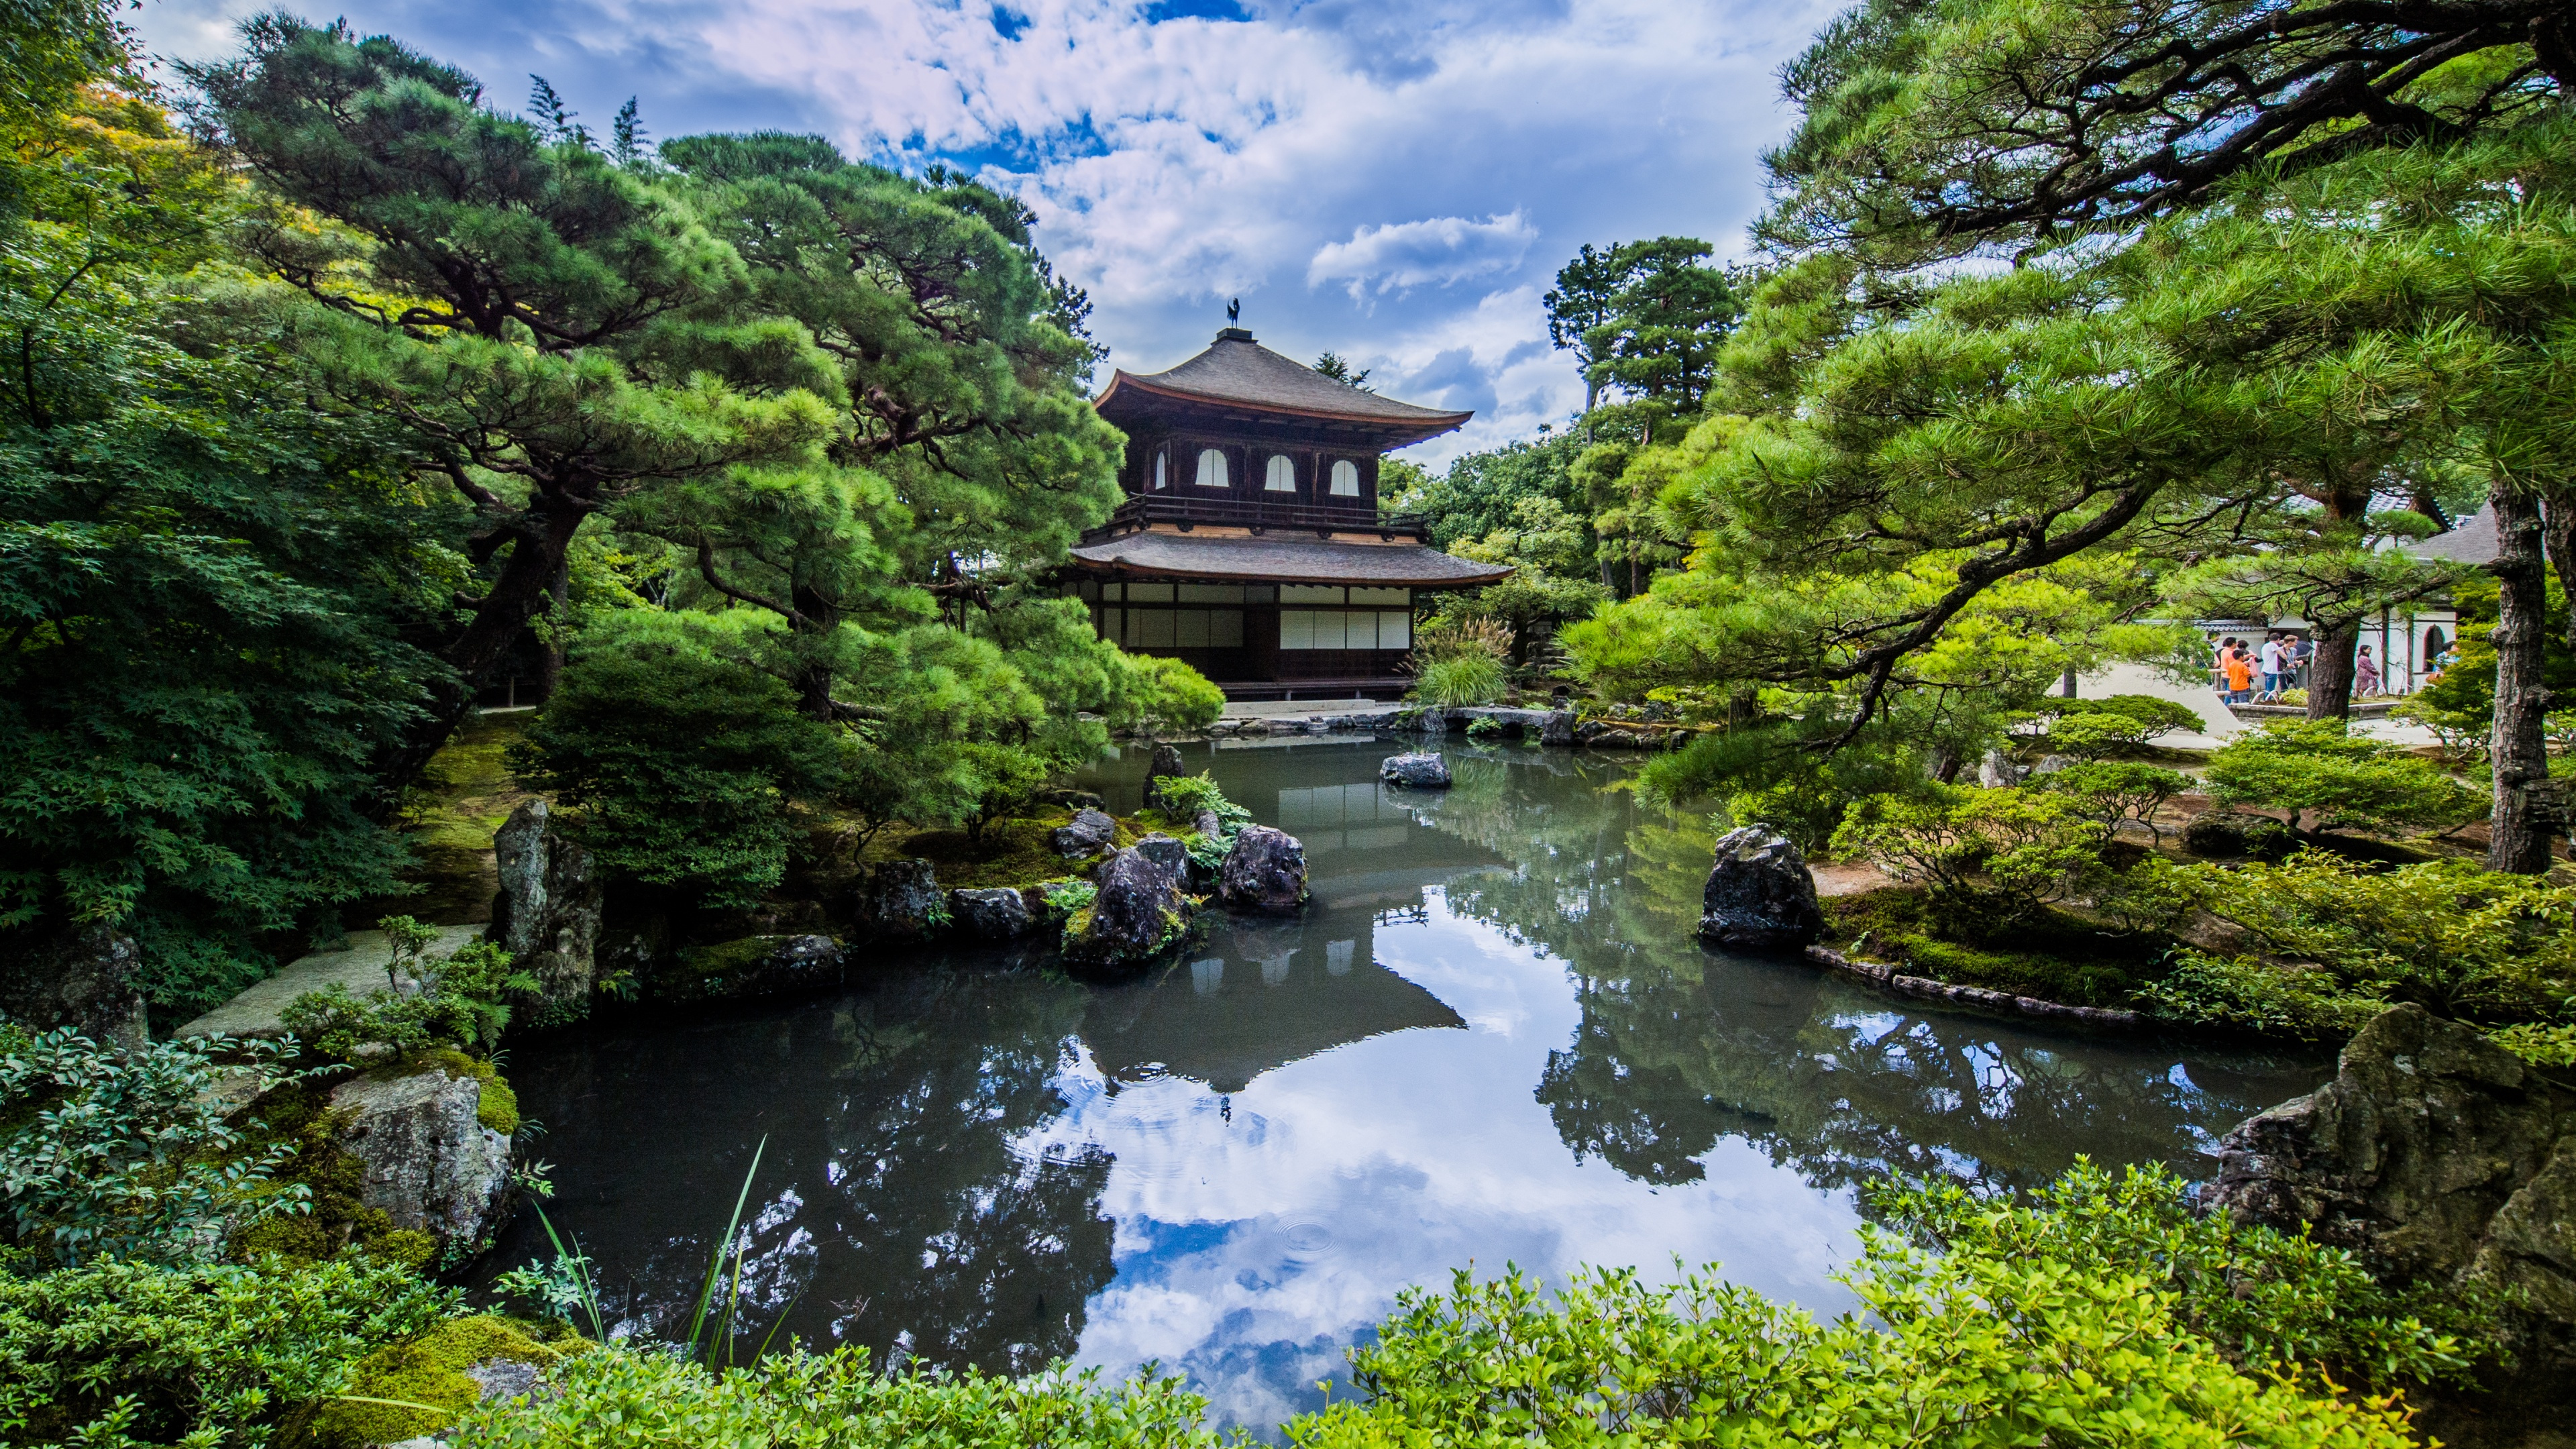 Japanese Rock Garden, Botanical Garden, Reflection, - Ginkaku-ji , HD Wallpaper & Backgrounds